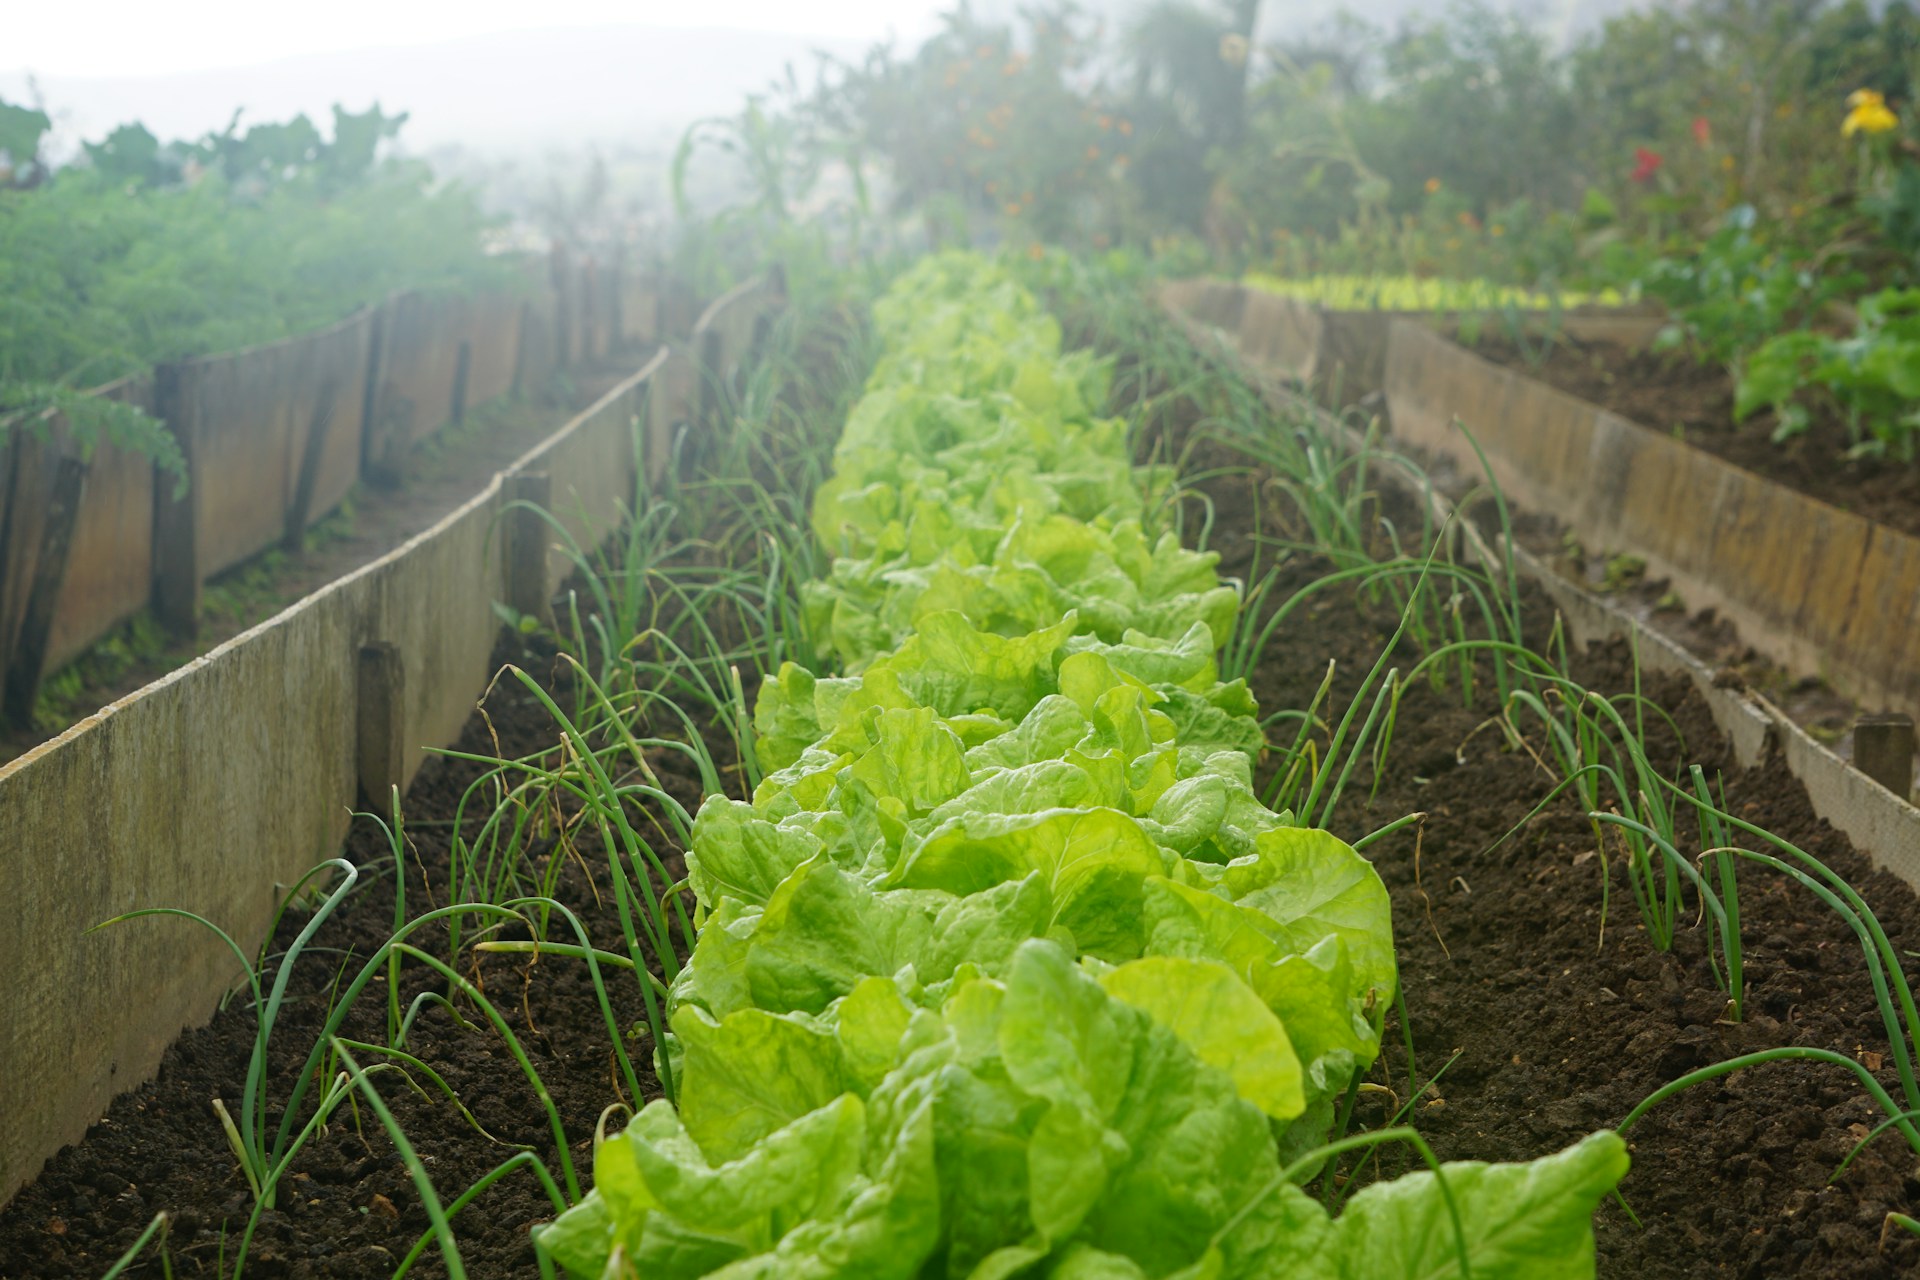 hlávkový salát: pusťte se do jeho výsevu. pěstovat se dá uvnitř i venku